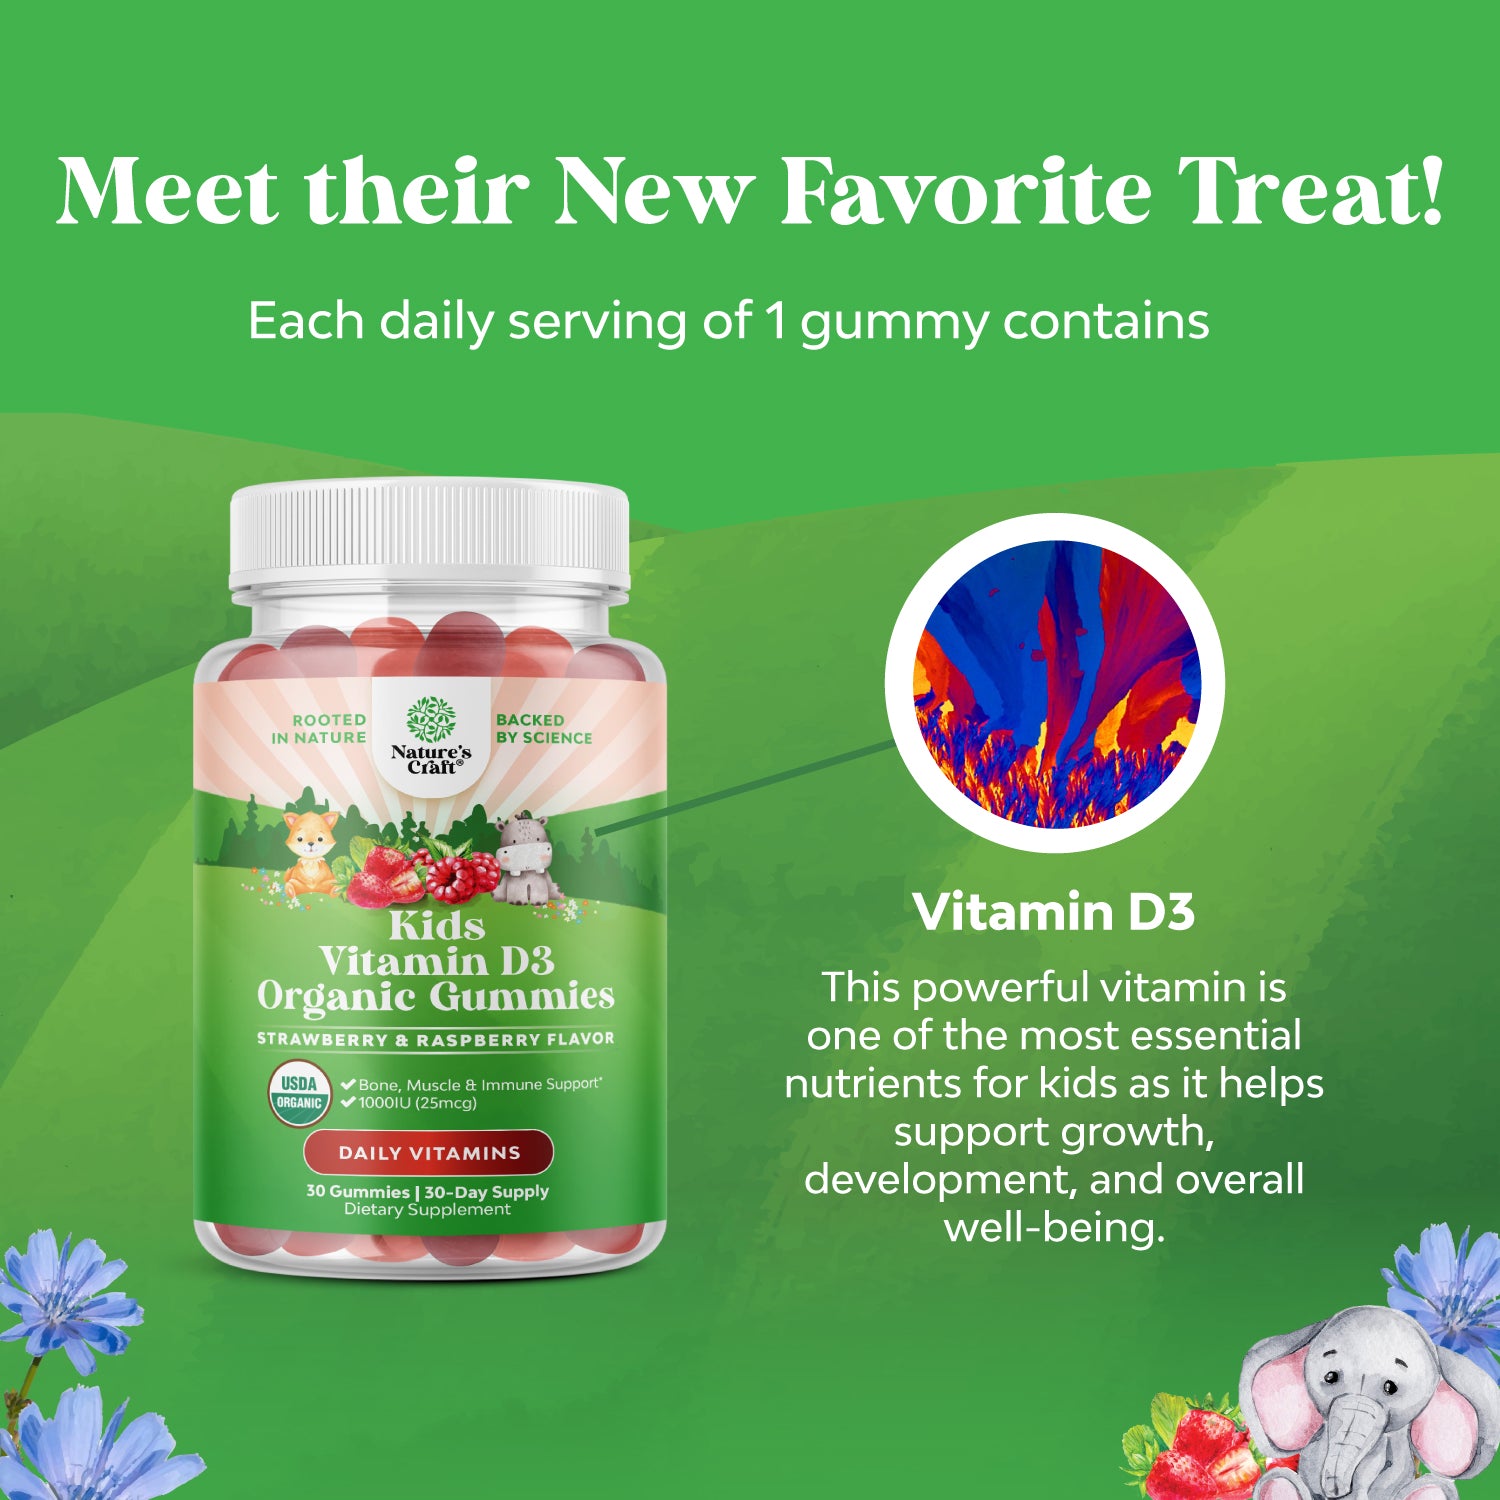 Kids Vitamin D3 Organic Gummies